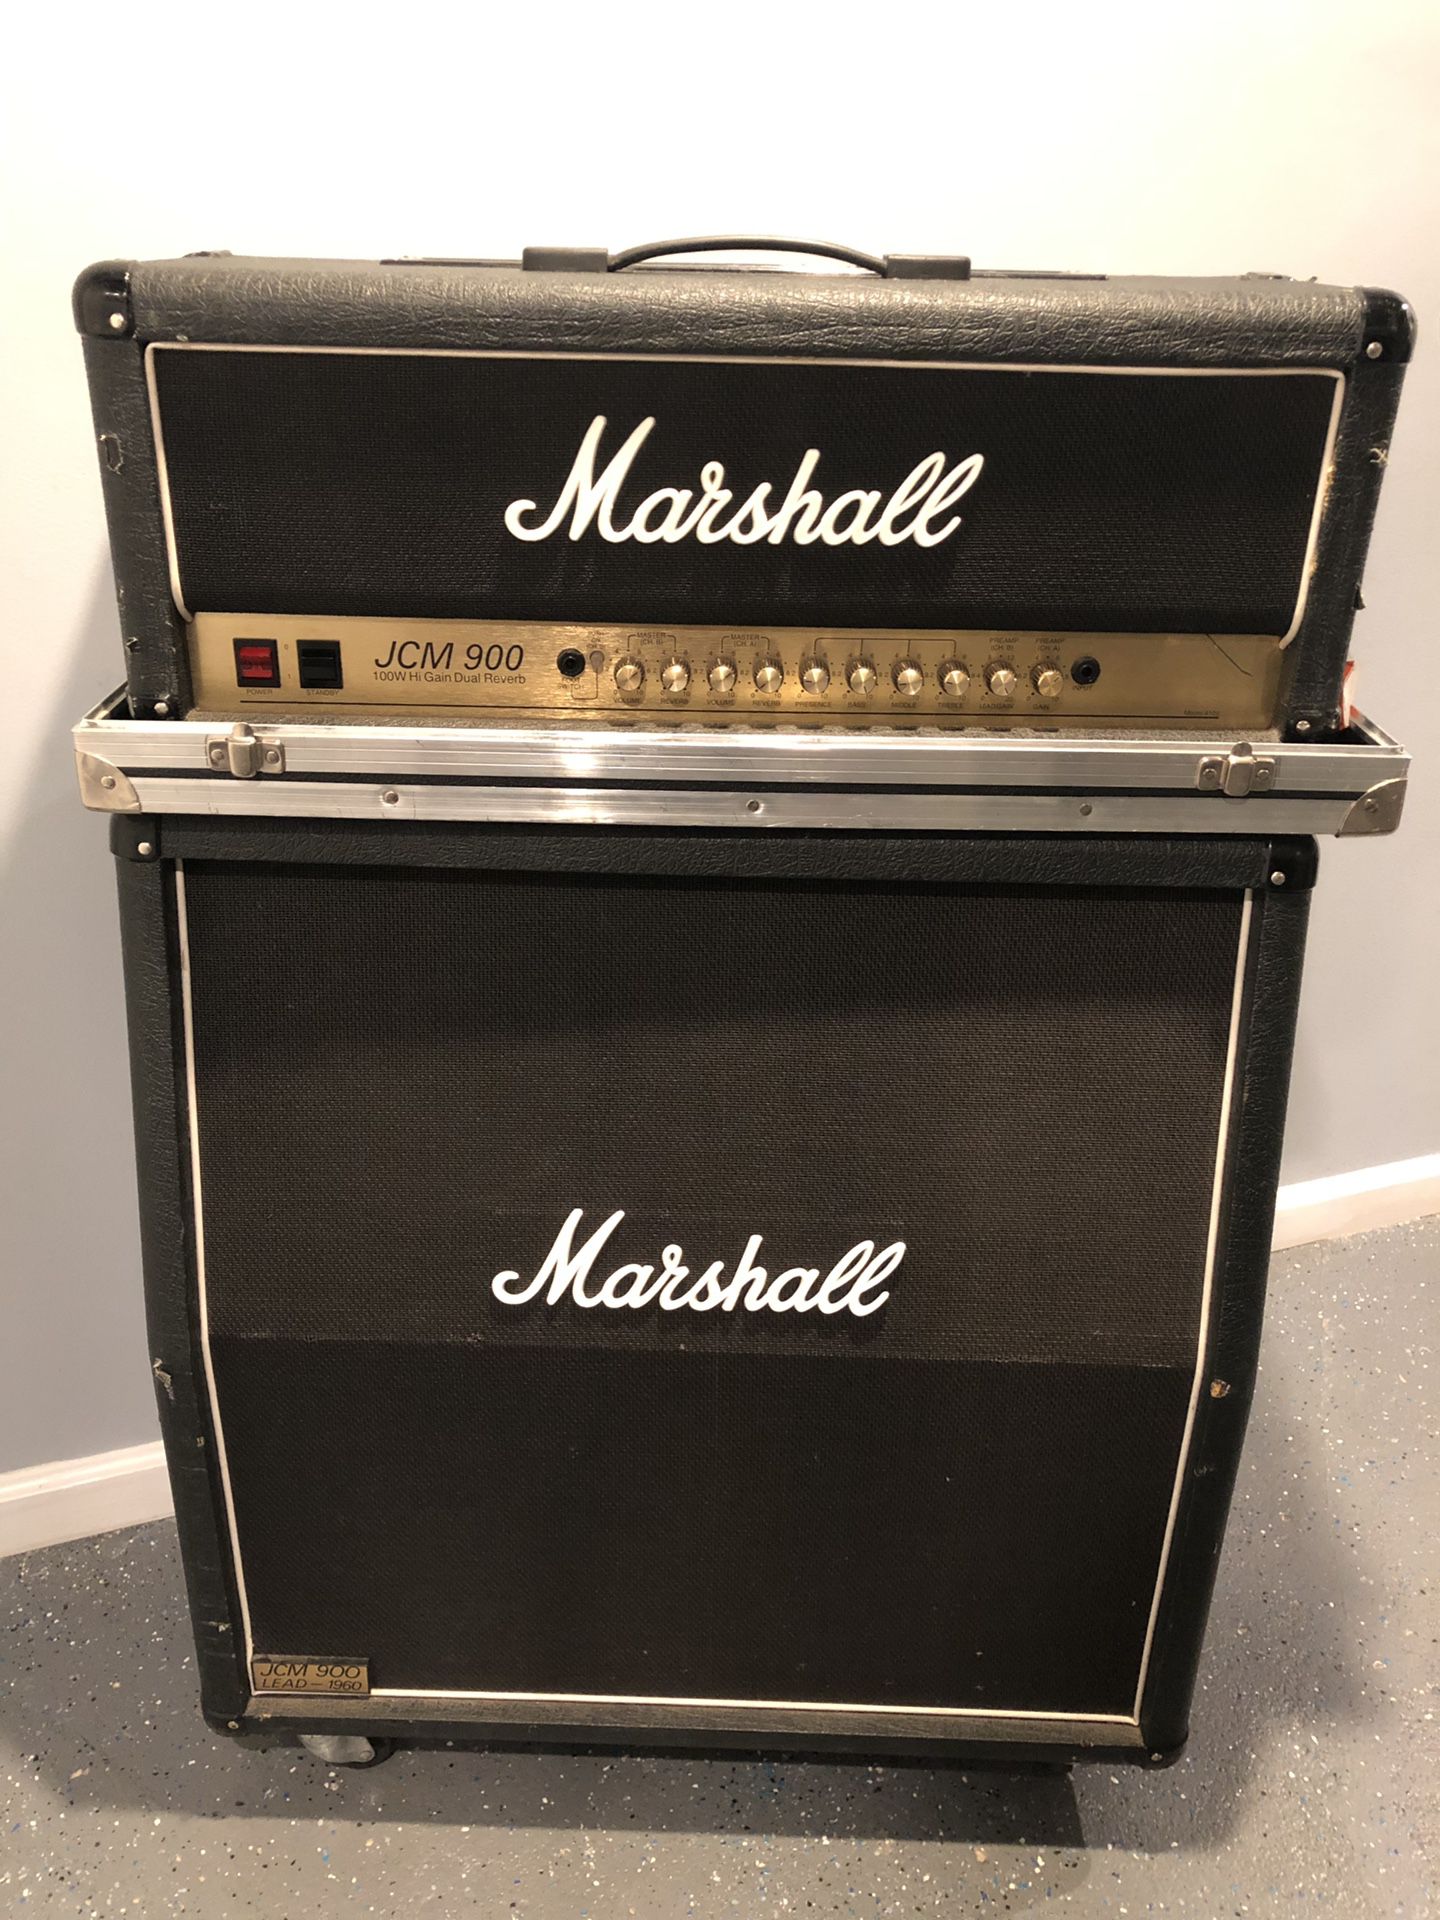 Marshall JCM900 100watt half stack guitar amp